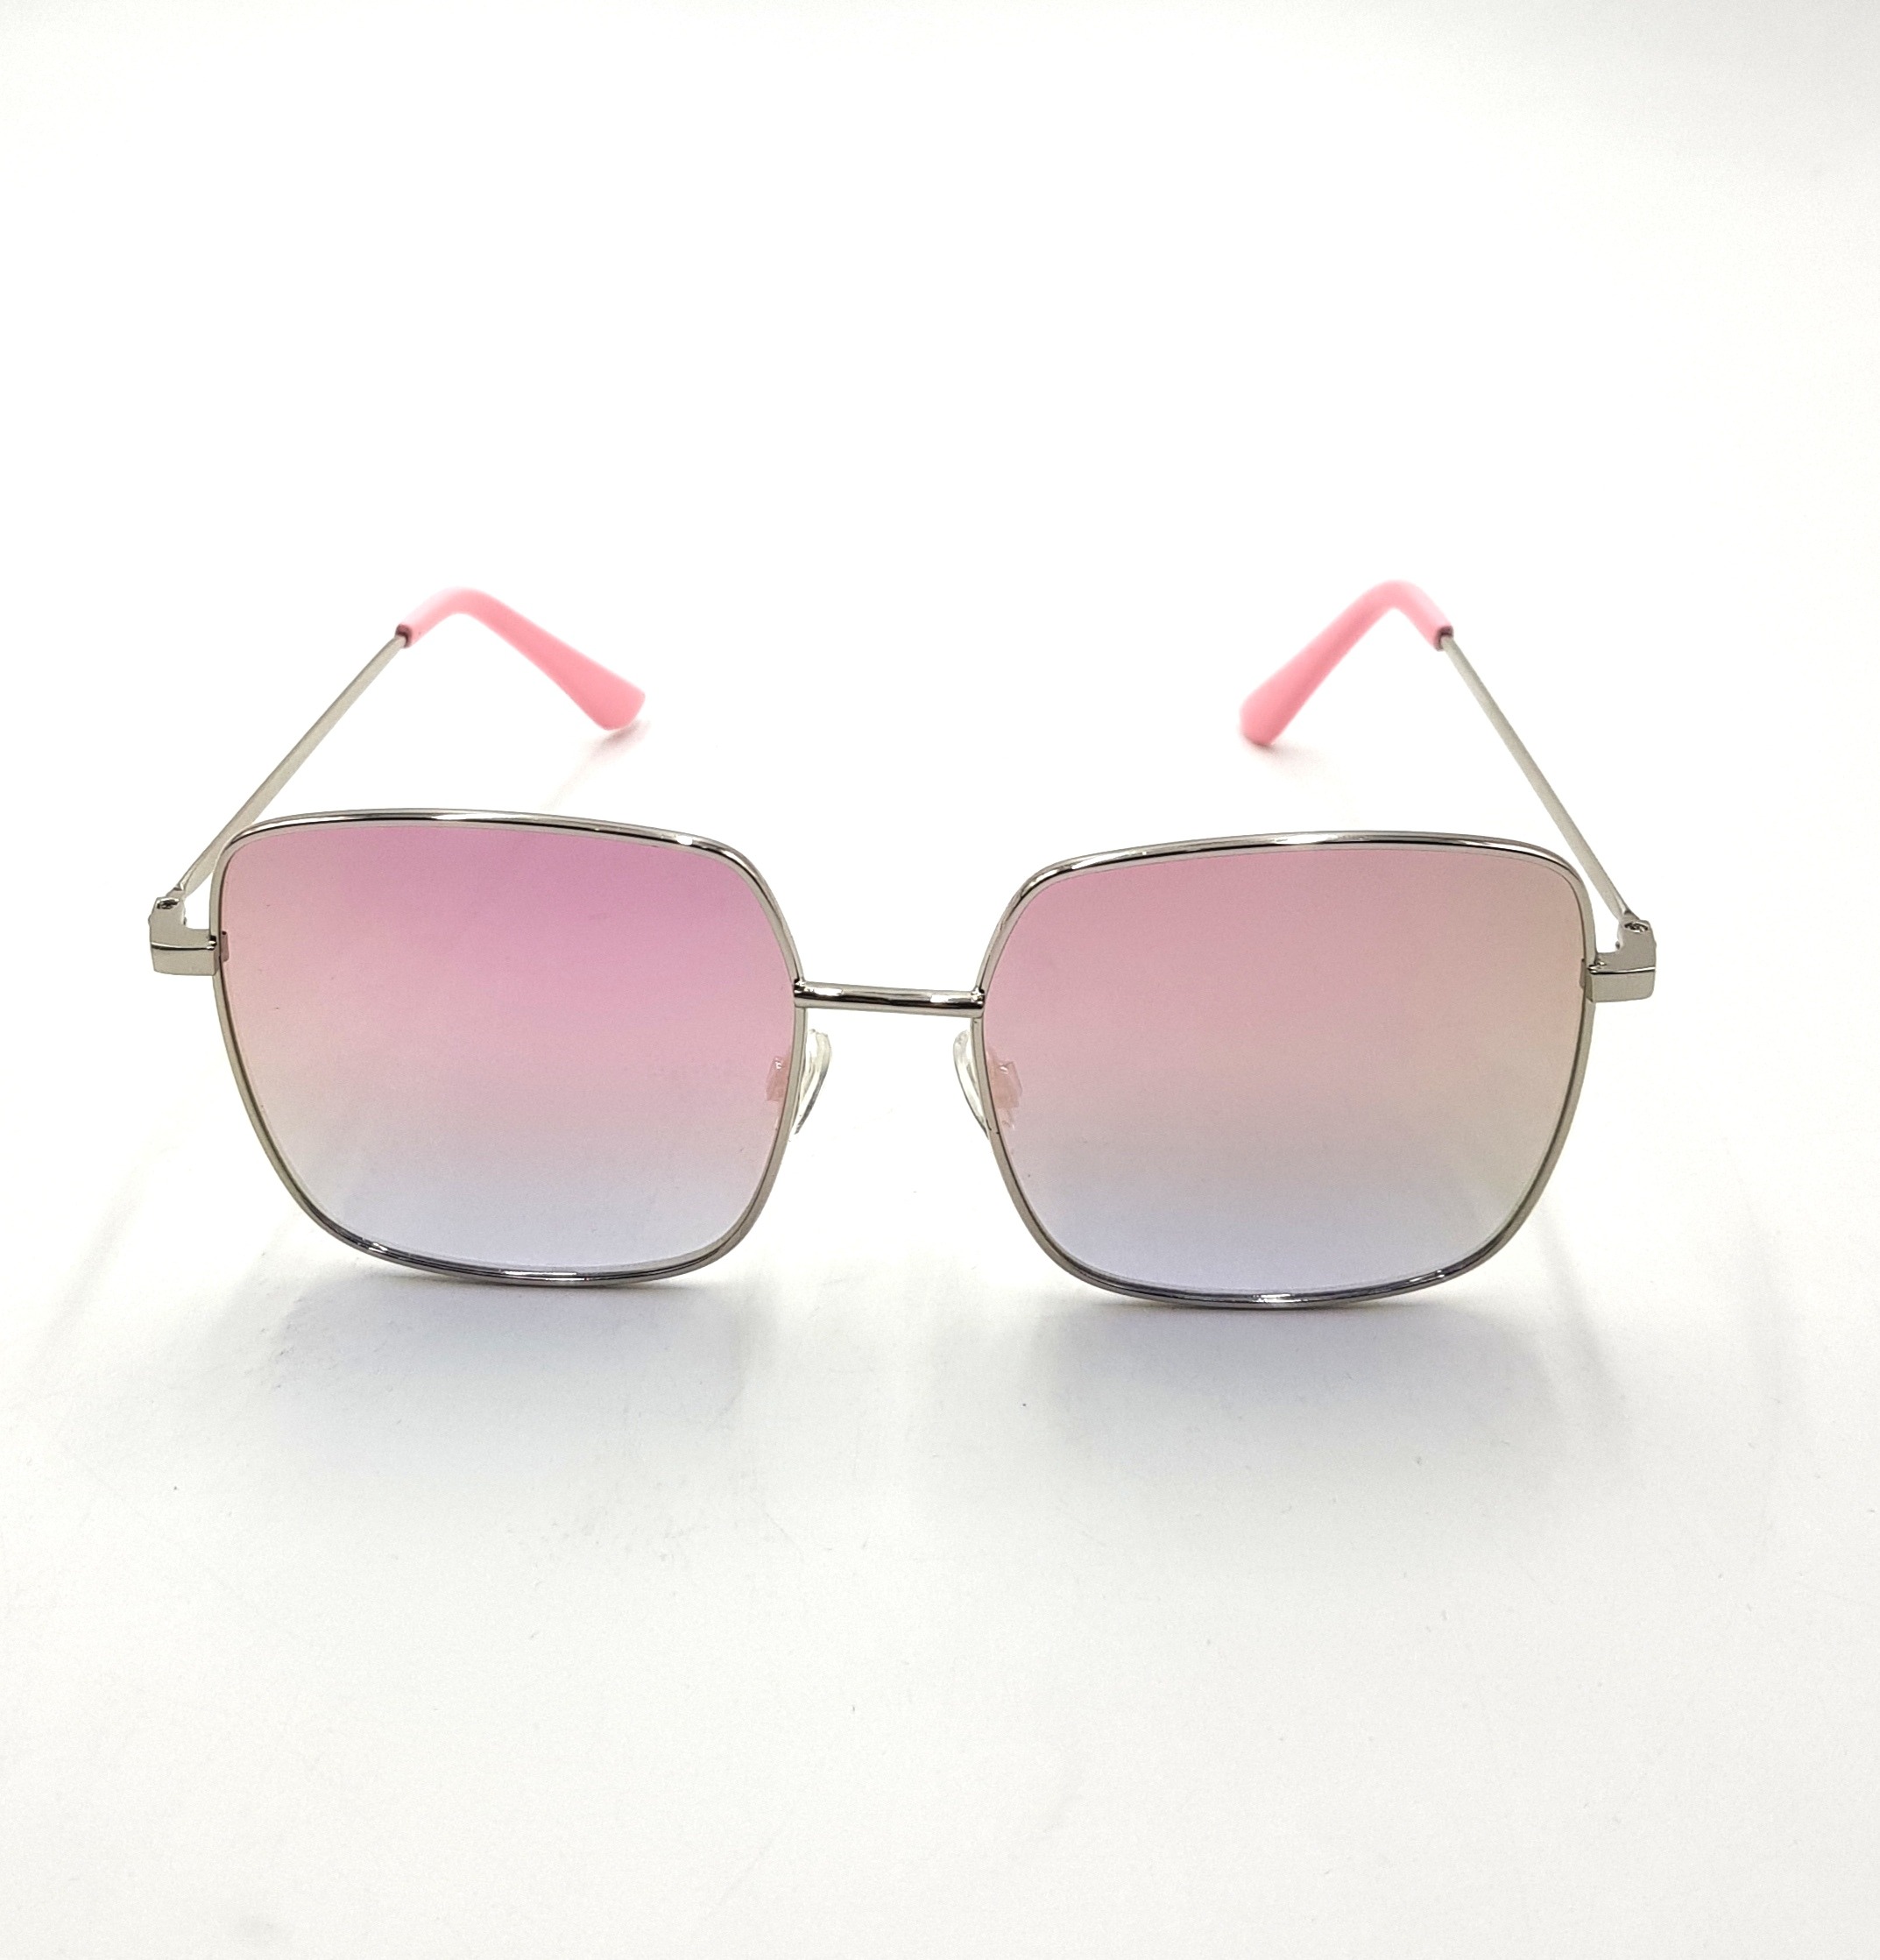 City Vision Ladies Sunglasses